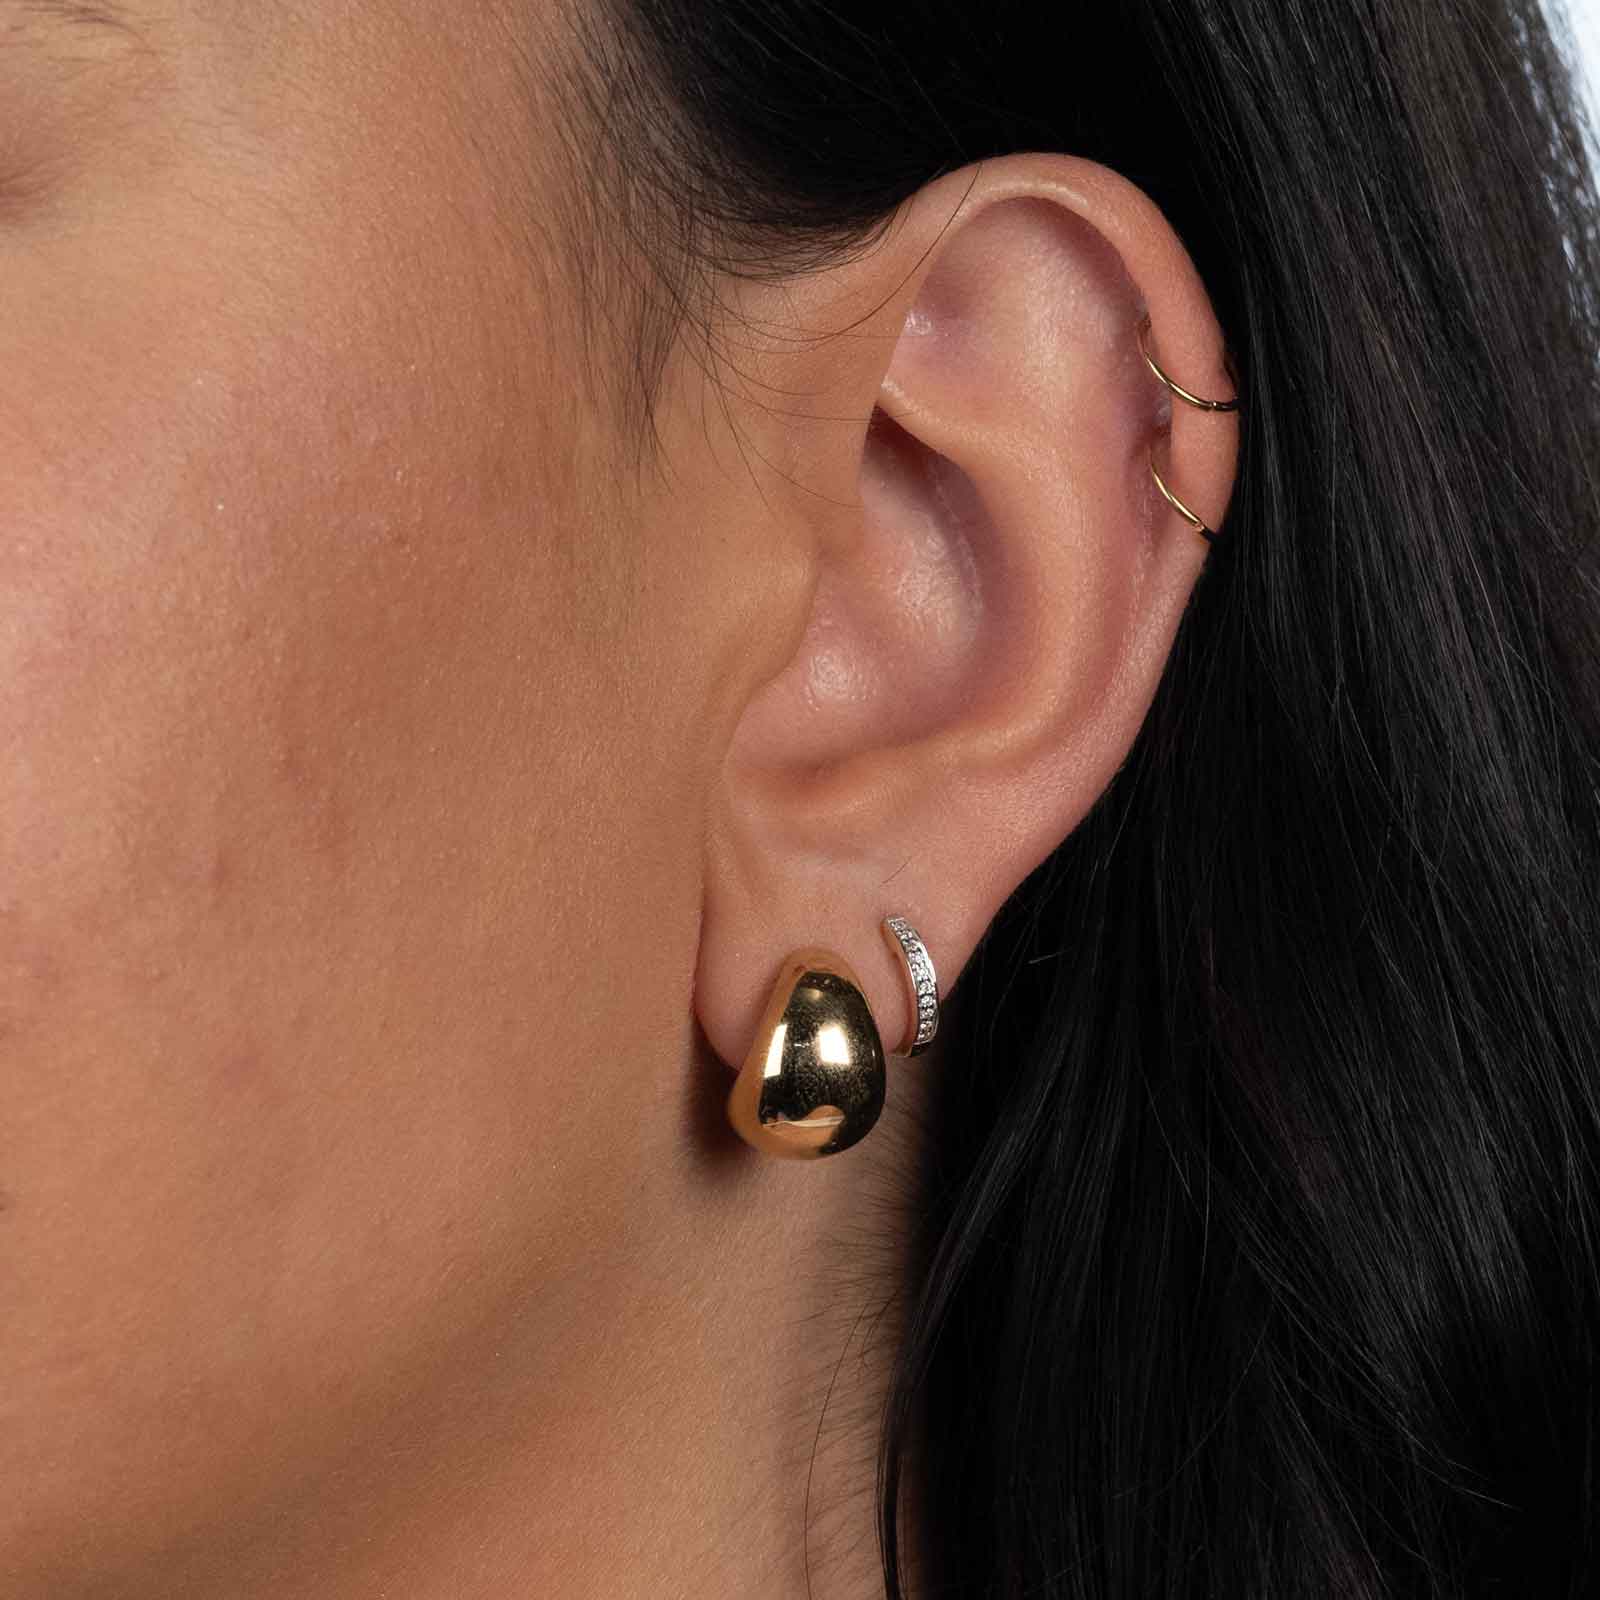 Sophisticated 18 Karat Yellow Gold Hoop Earrings